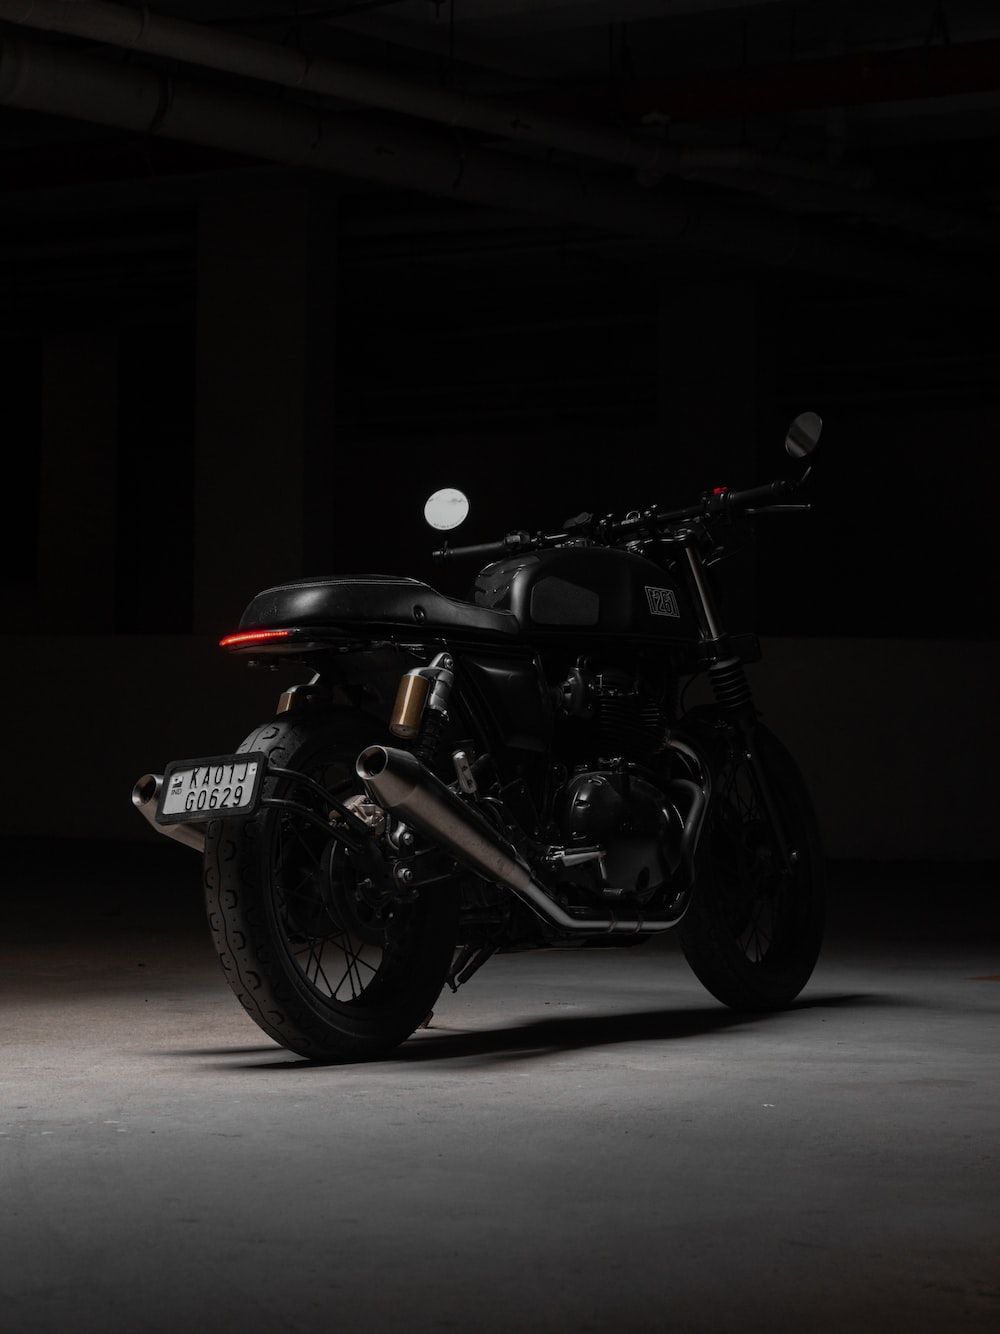  Motorrad Hintergrundbild 1000x1334. Foto zum Thema Ein motorrad, das in einem dunklen raum geparkt ist